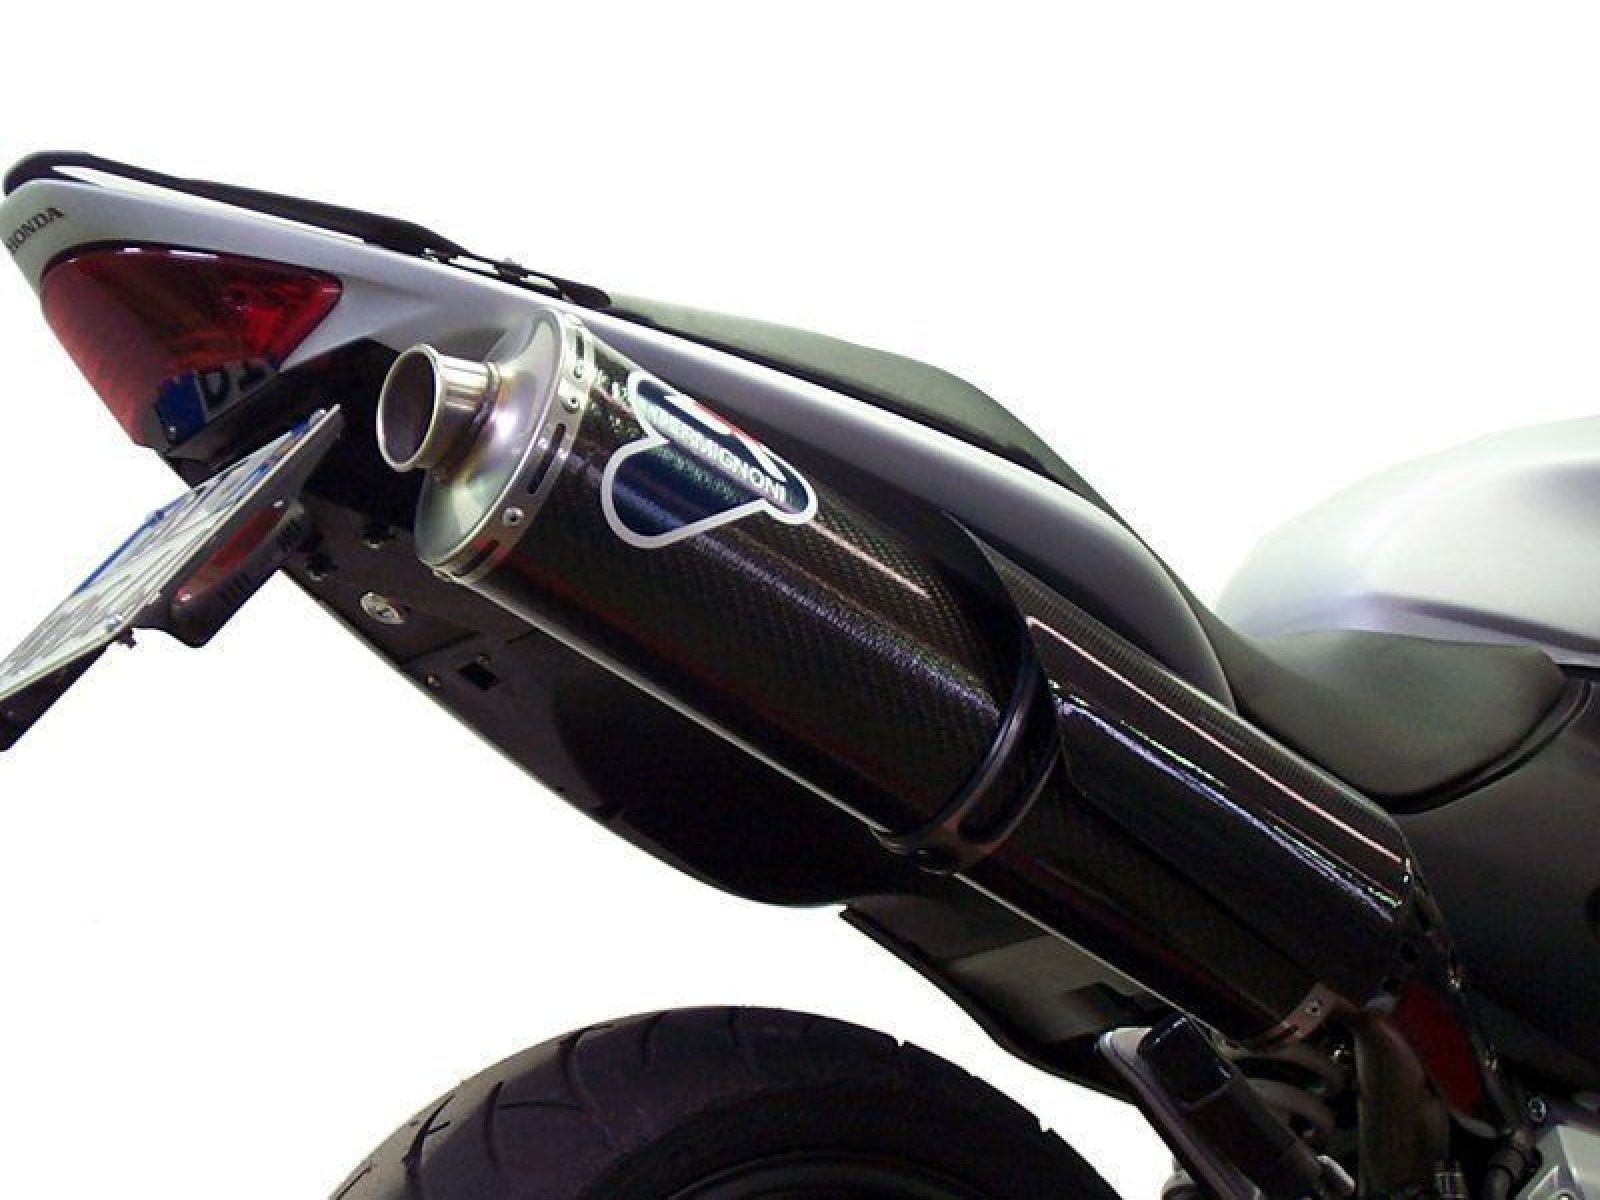 Глушитель Termignoni для Honda CB600 Hornet 03-06